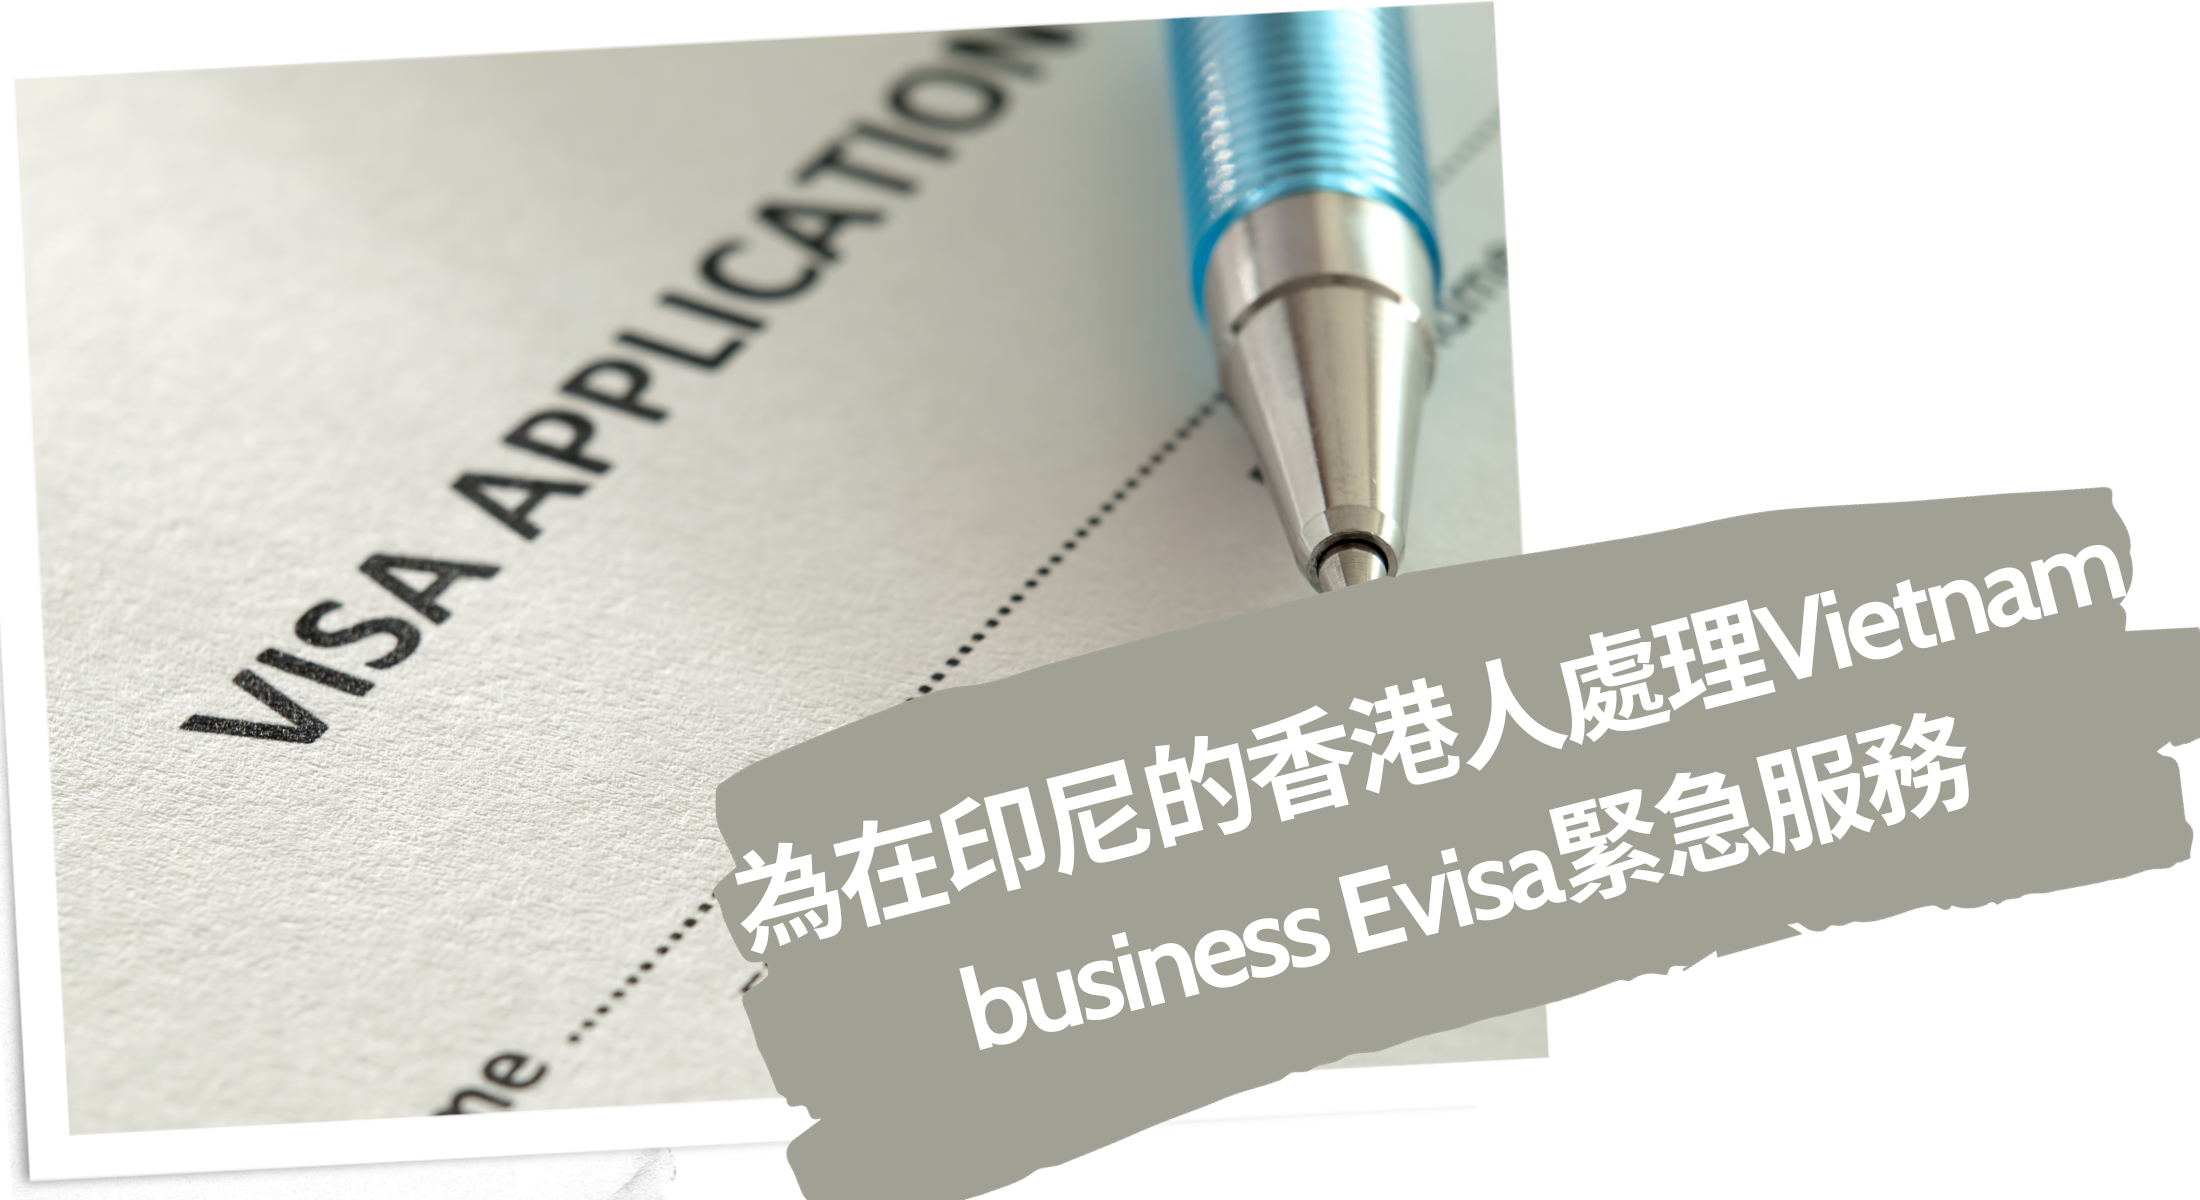 2024為在印尼的香港人處理Vietnam business Evisa緊急服務